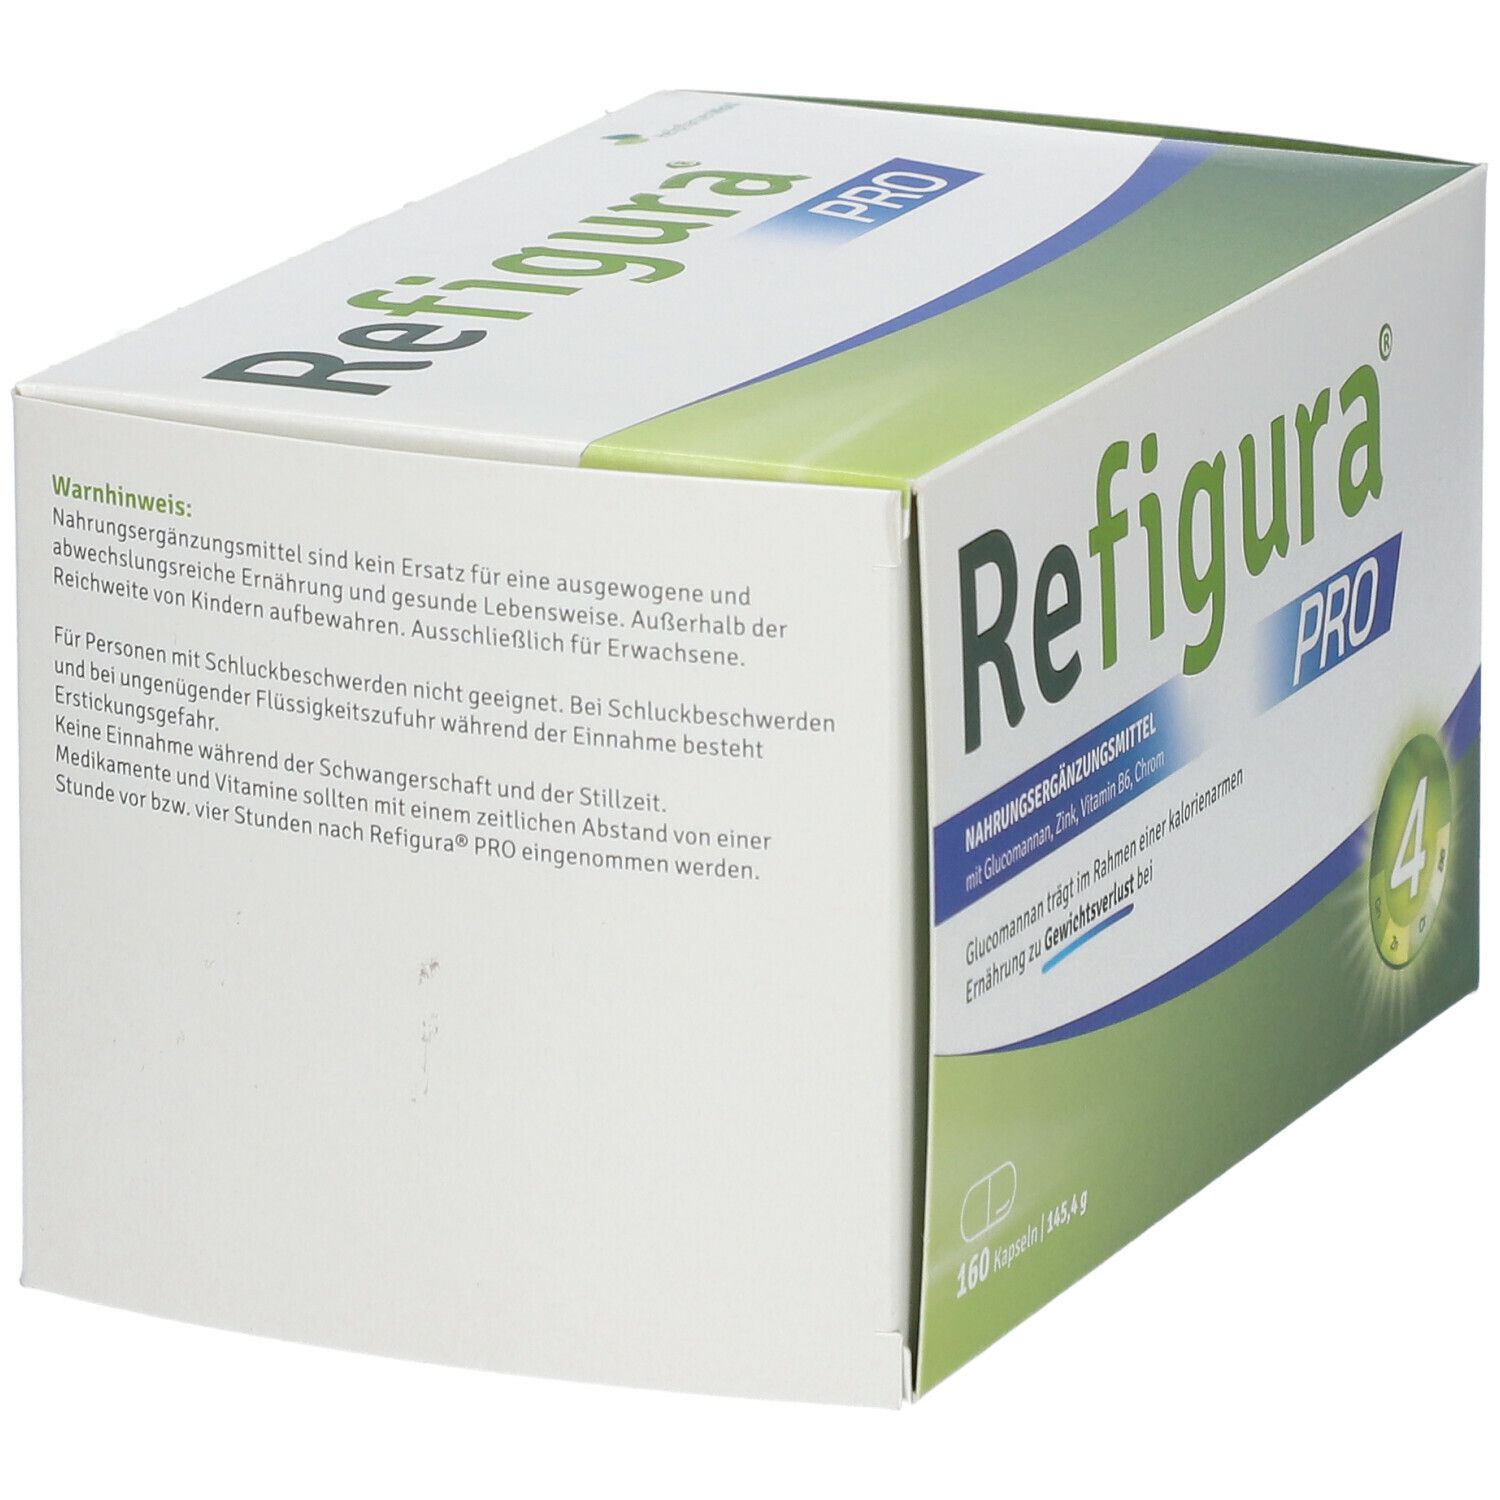 REFIGURA® Pro Kapseln für einen aktiven Stoffwechsel vegan